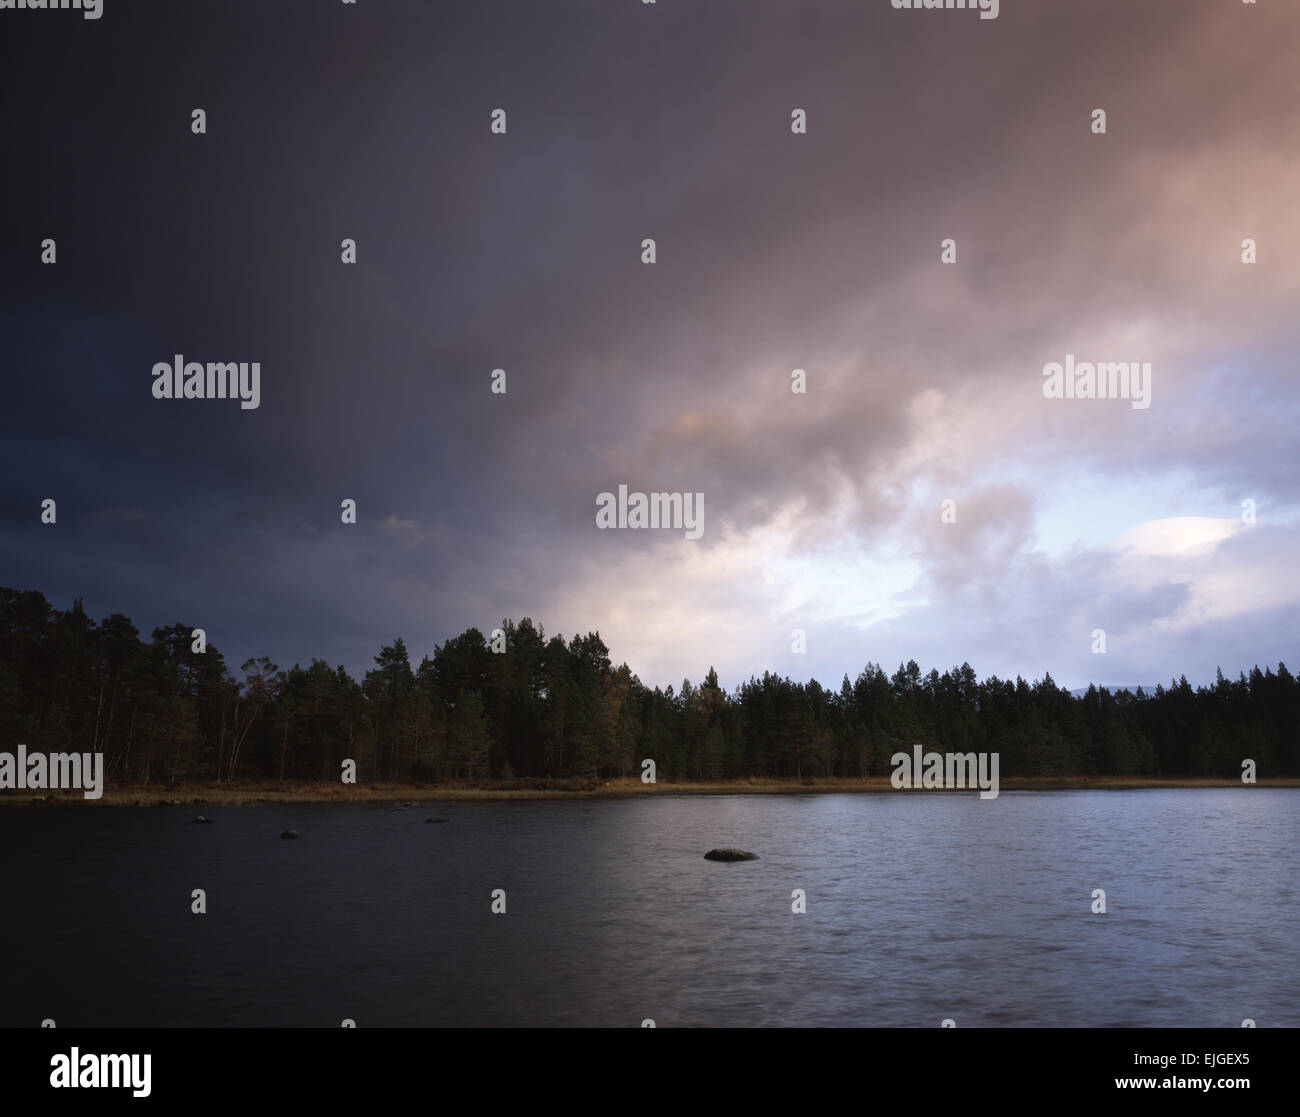 Dans le Loch Morlich, météo changeante Rothiemurchus Forest, Aviemore, Scotland, UK Banque D'Images